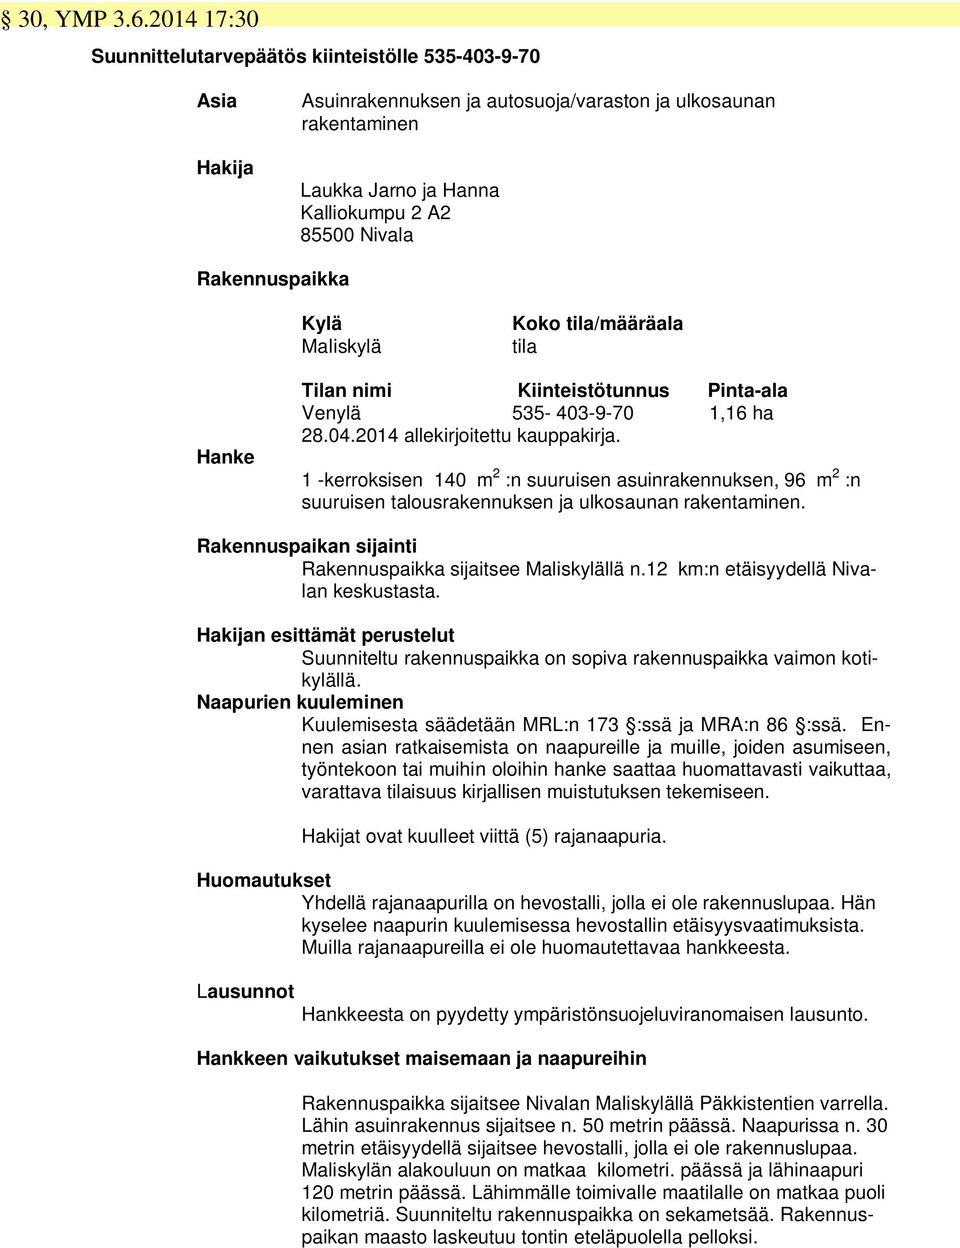 Rakennuspaikka Kylä Maliskylä Koko tila/määräala tila Hanke Tilan nimi Kiinteistötunnus Pinta-ala Venylä 535-403-9-70 1,16 ha 28.04.2014 allekirjoitettu kauppakirja.